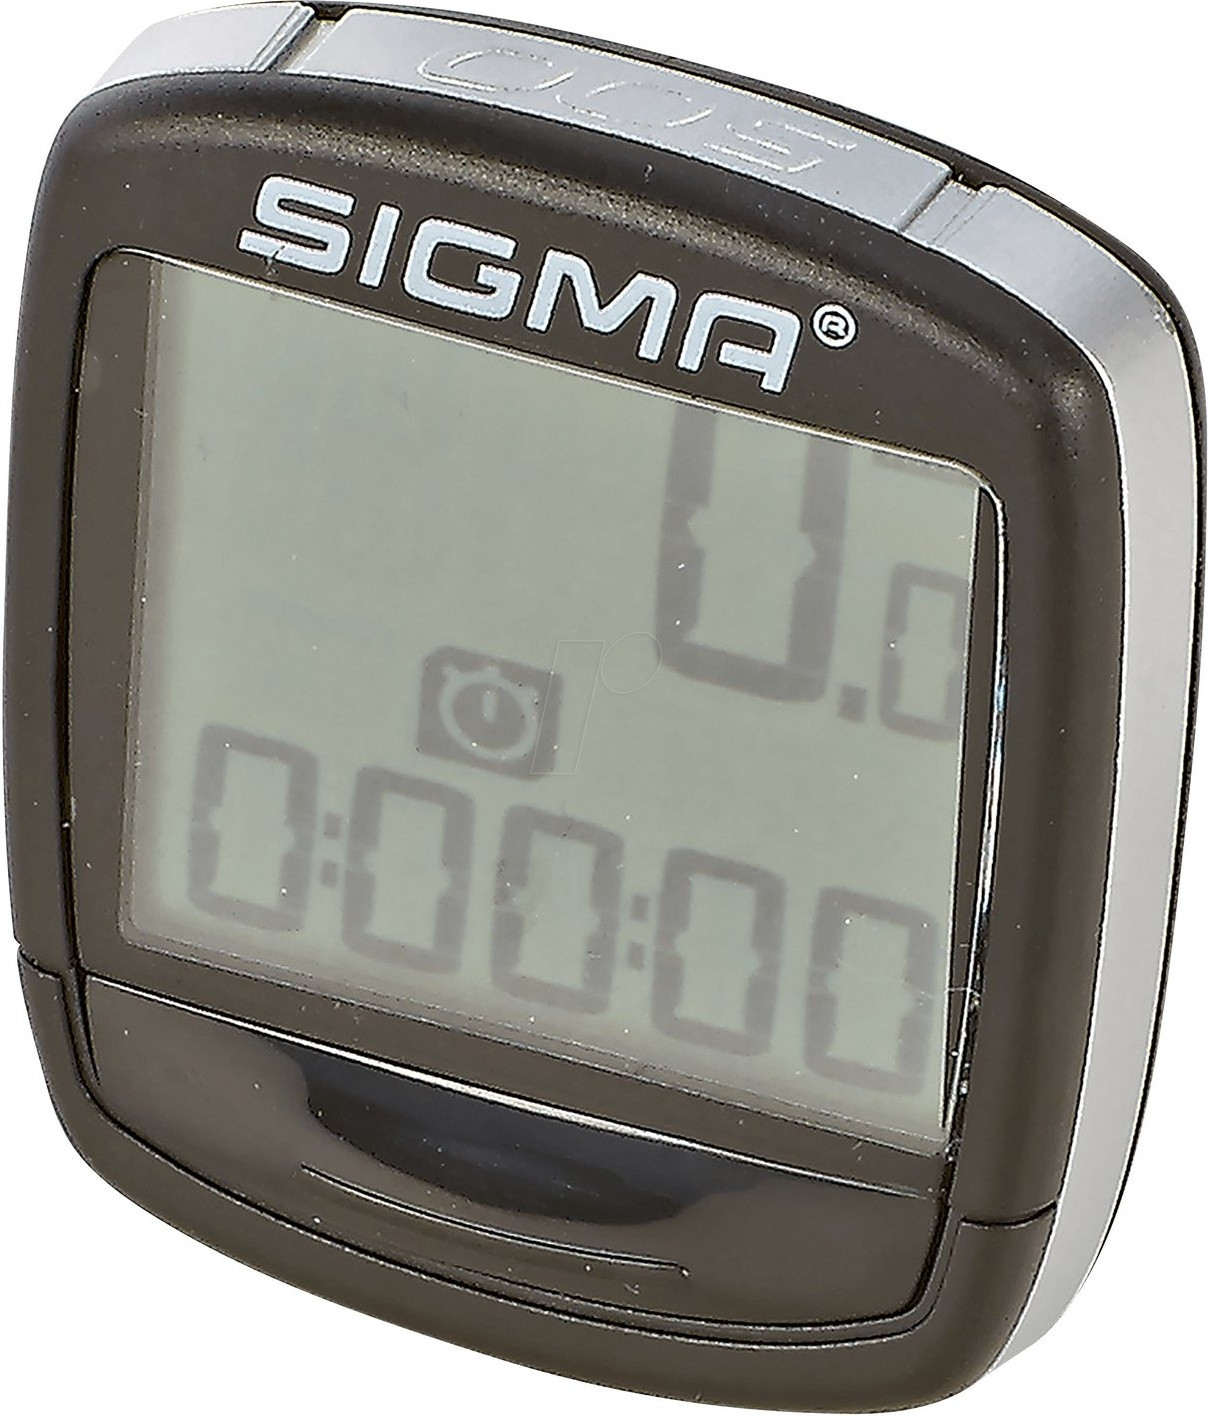 Sigma compteur vélo 5 fonctions bc 500 1930 - Conforama